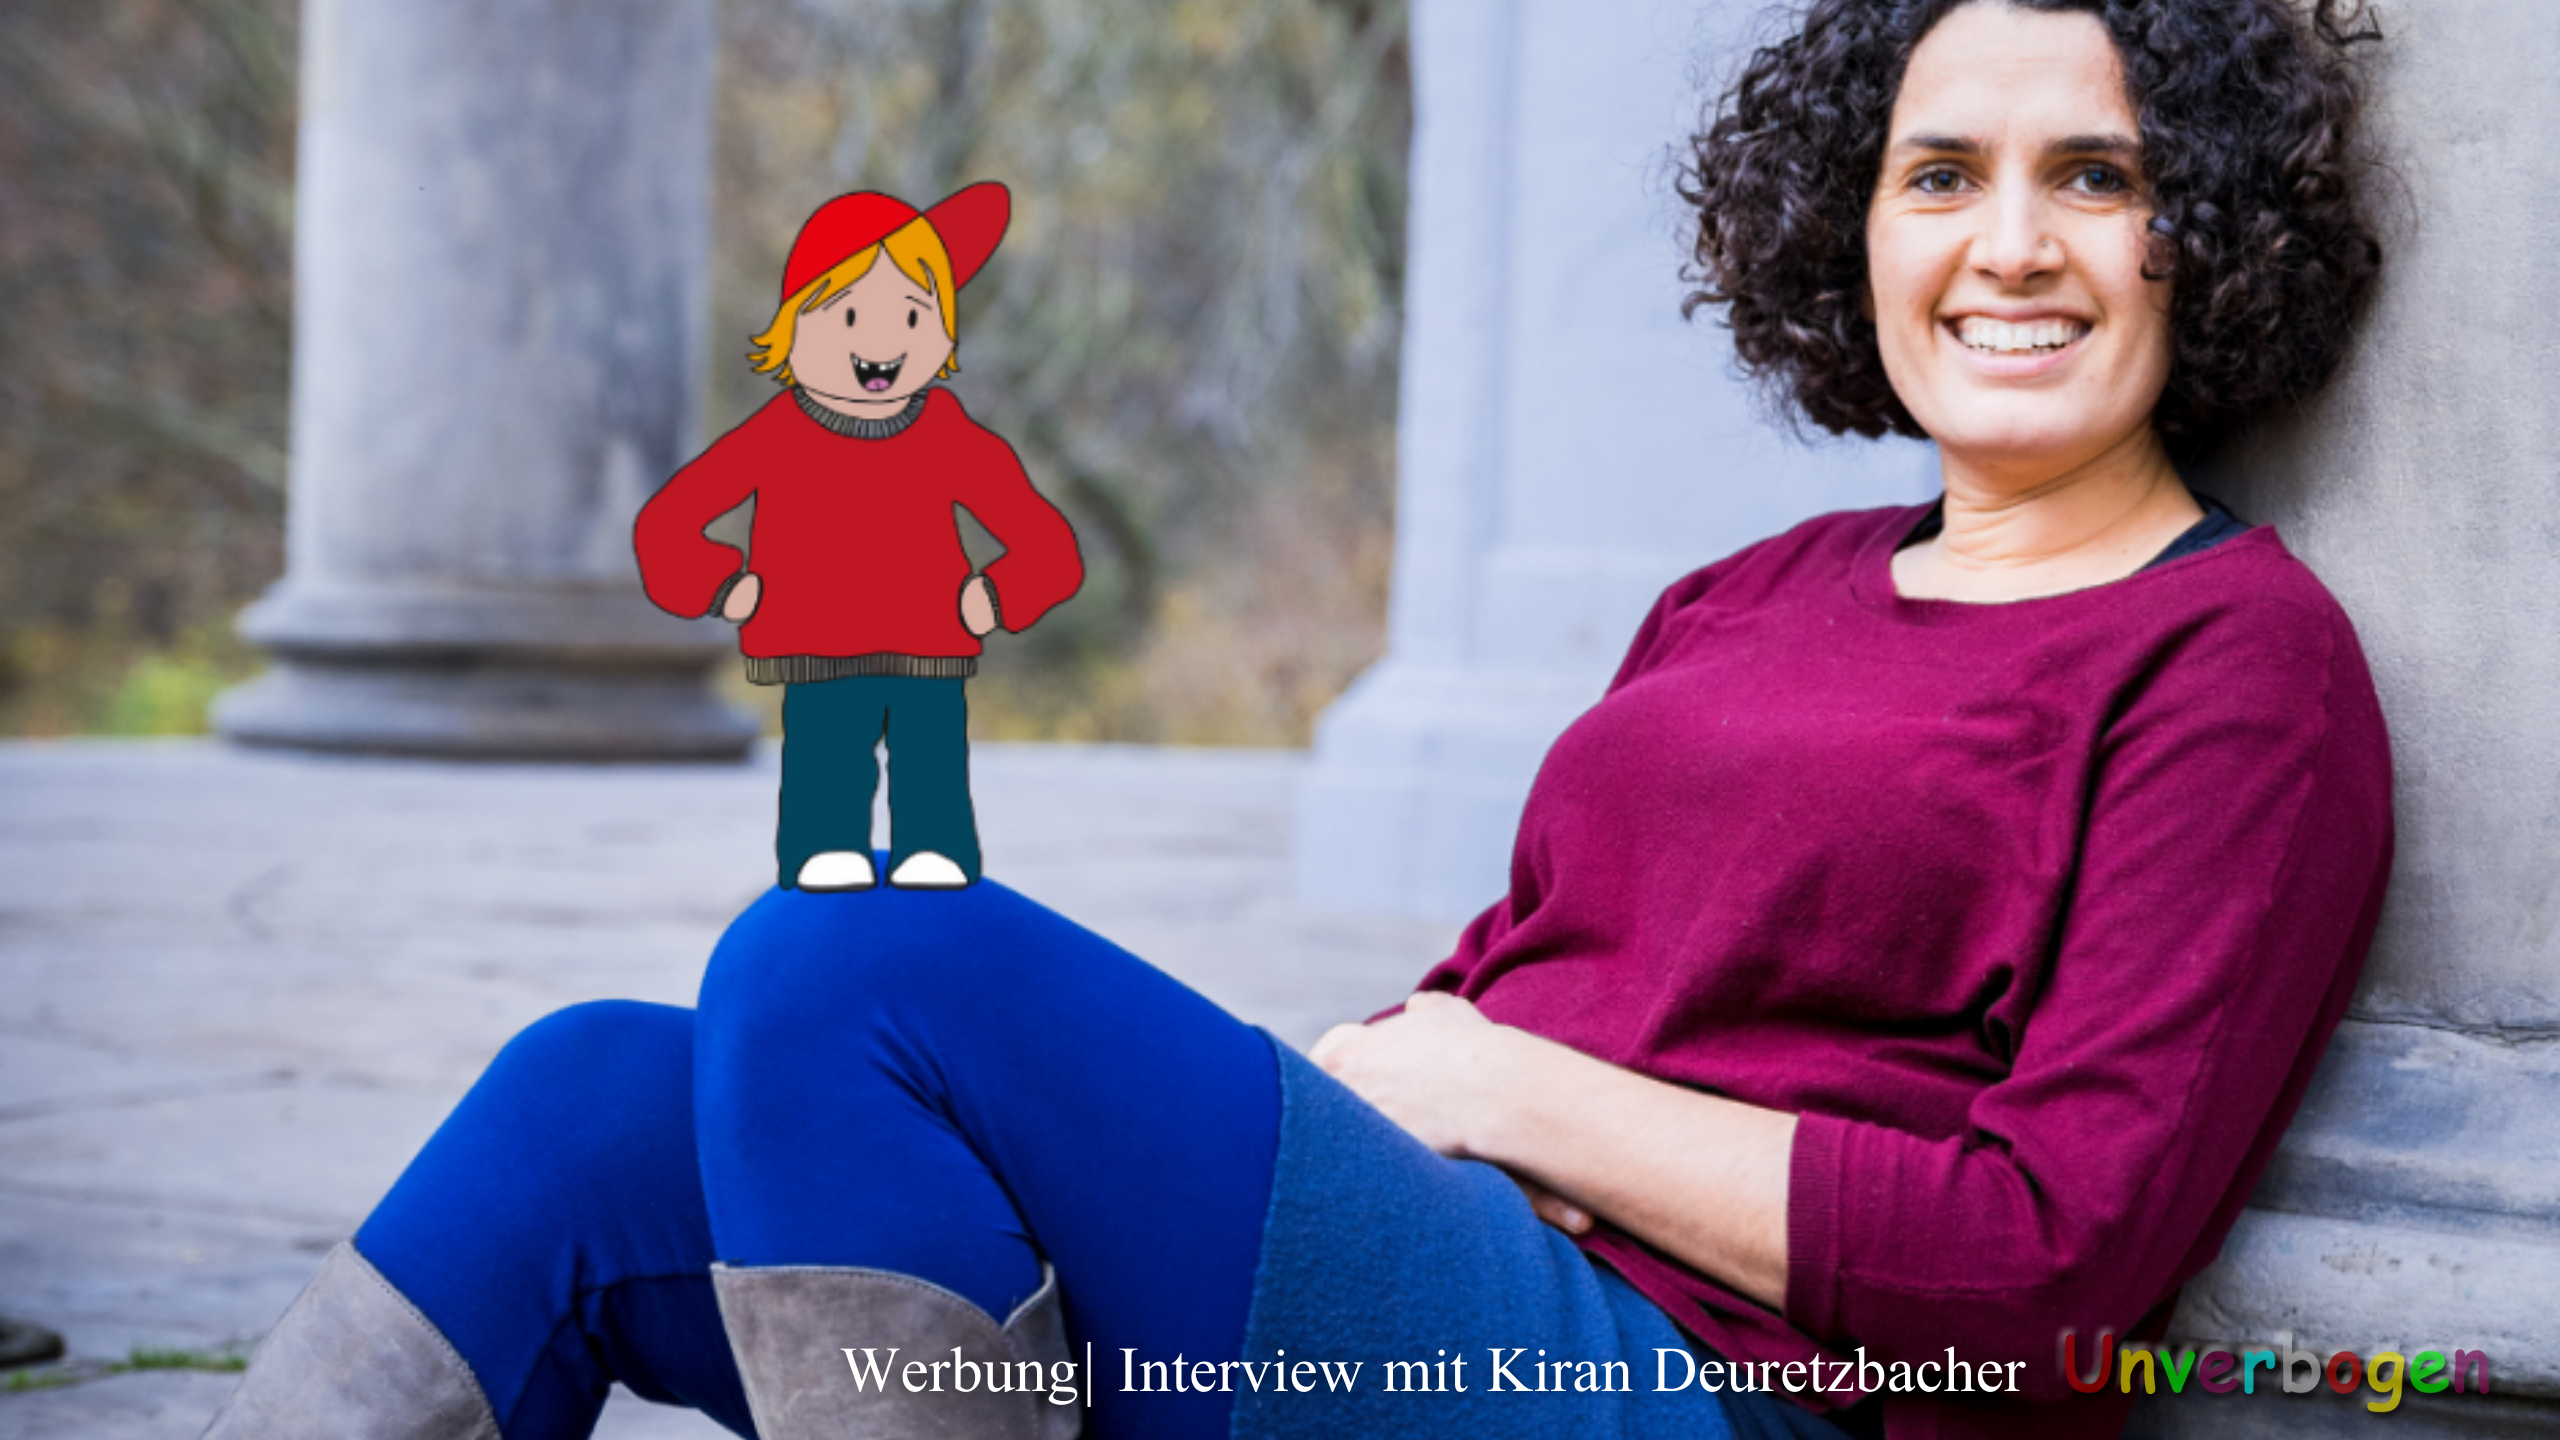 (Werbung) Ein bindungsstarker Schulstart mit Kiran Deuretzbacher | Interview